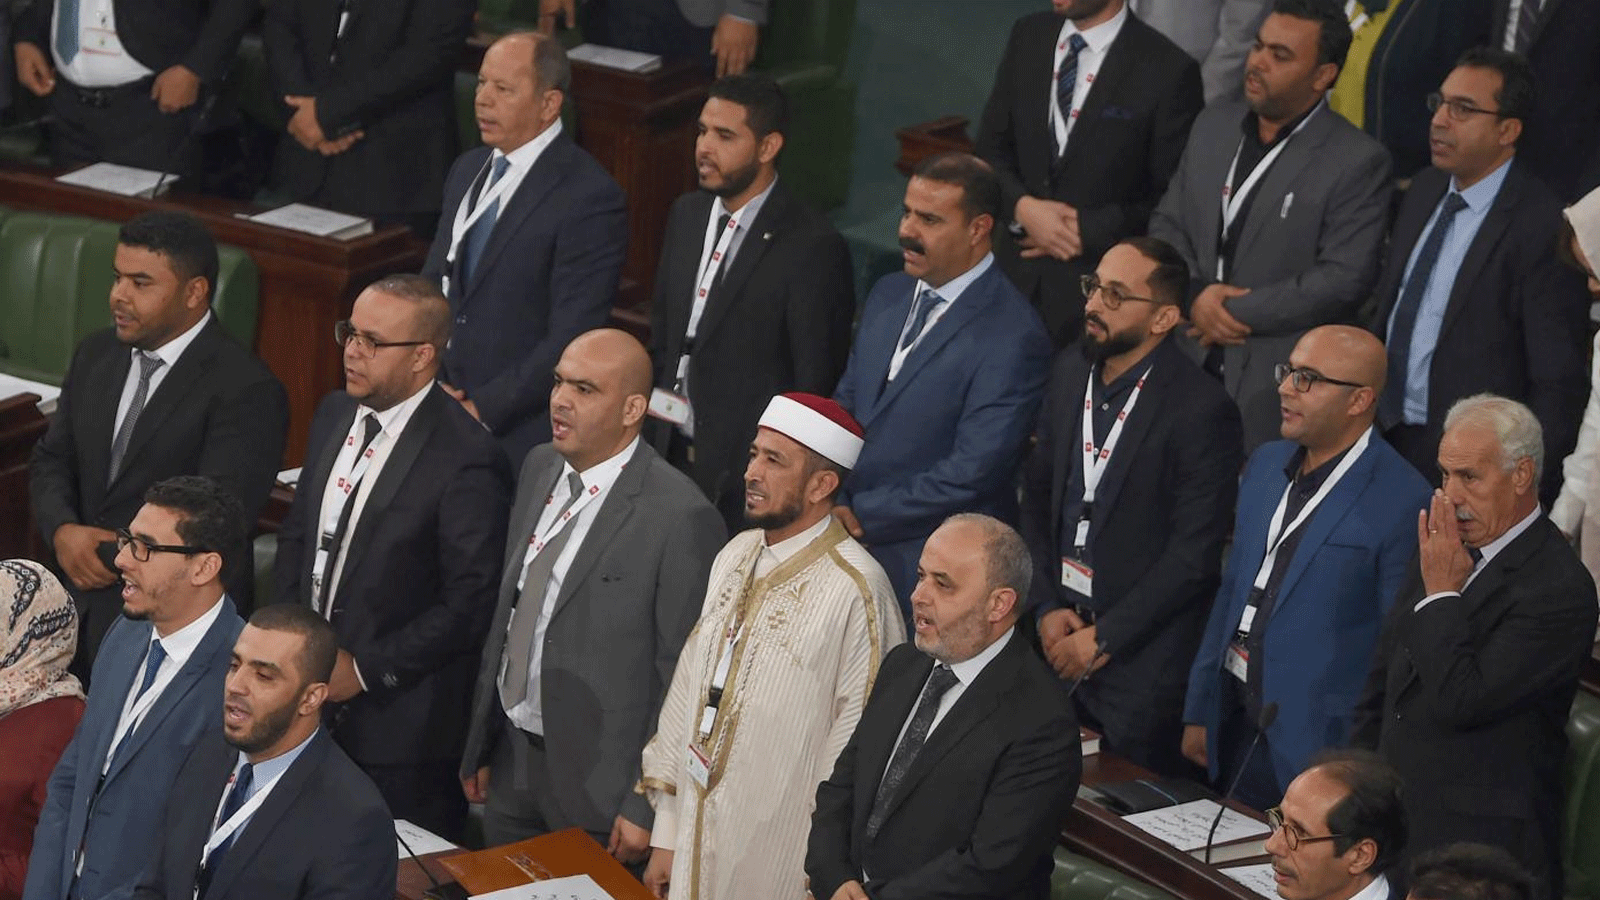 نواب تحالف الكرامة يحضرون الجلسة الأولى للبرلمان الجديد بعد انتخابات أكتوبر بالعاصمة التونسية تونس.بتاريخ 13 تشرين الثاني/ نوفمبر 2019